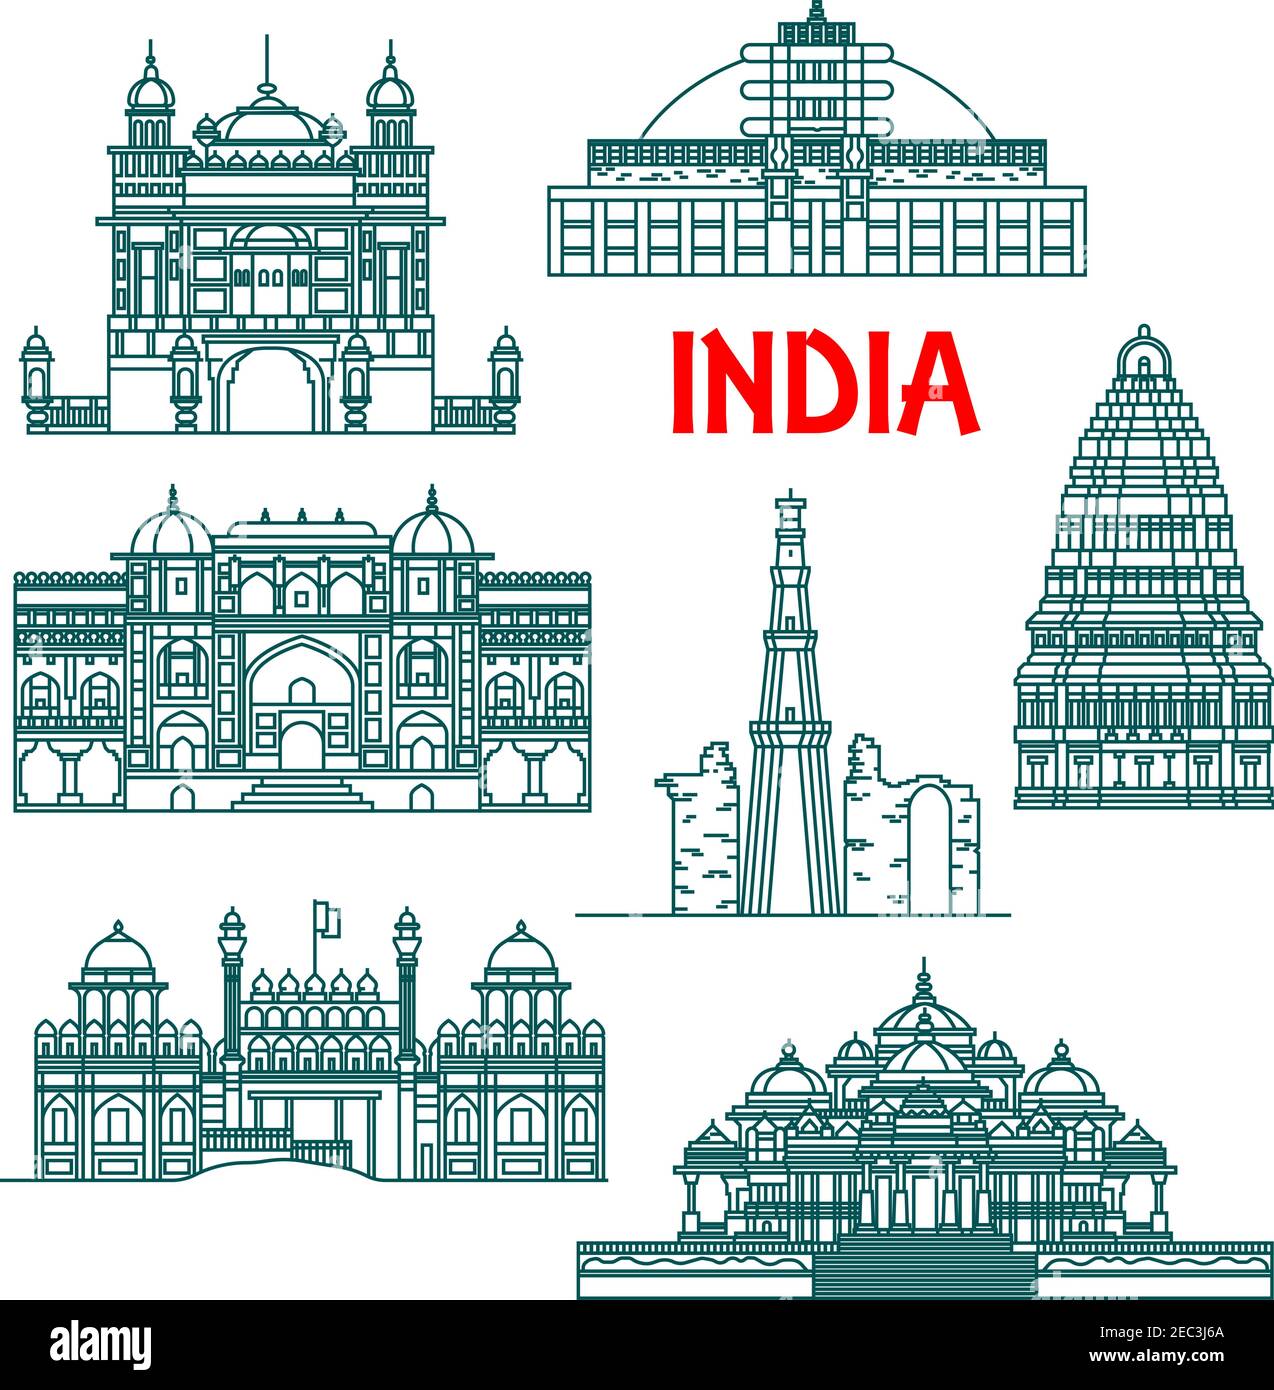 Touristenattraktionen und nationales architektonisches Erbe von Indien dünne Linie Ikonen für Reise-Design mit Qutub Minar, Buddhist Stupa in Sanchi, Rot für Stock Vektor